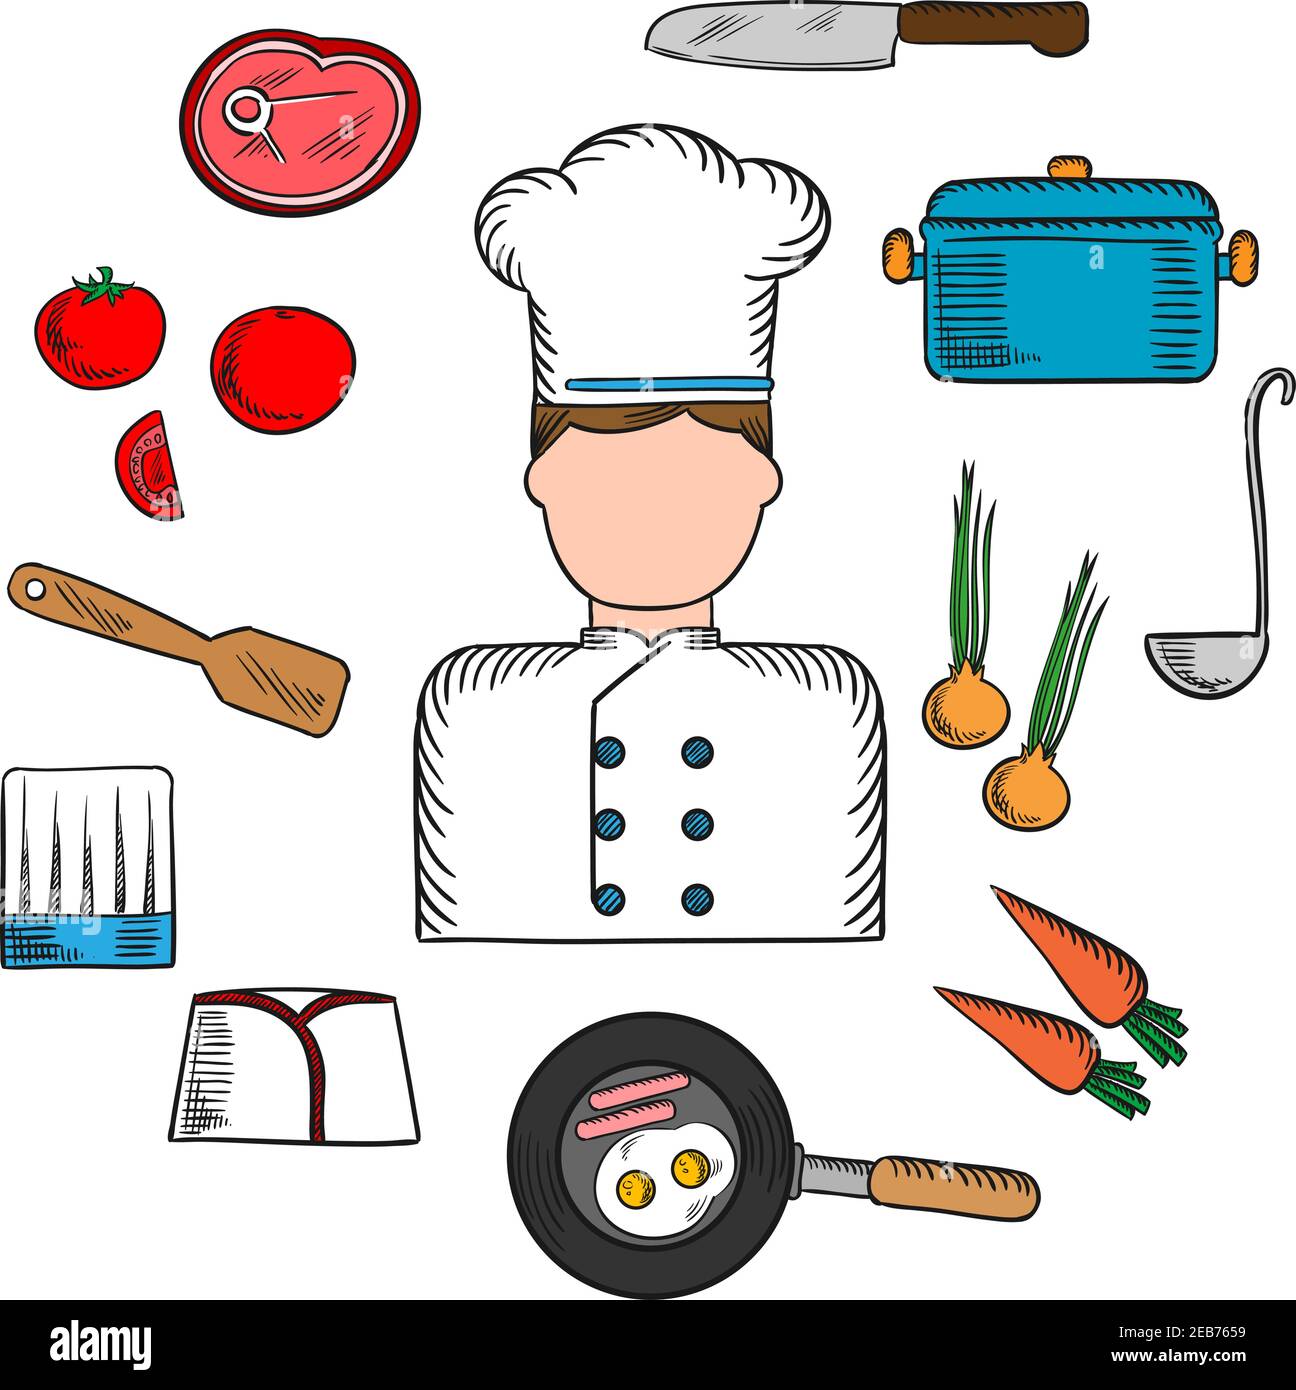 Koch Beruf mit Koch in Uniform umgeben von frischen Tomaten, Zwiebeln und Karotten, Pfanne mit Eiern und Speck mit Messer, Topf mit Schöpflöffel und Fleisch st Stock Vektor